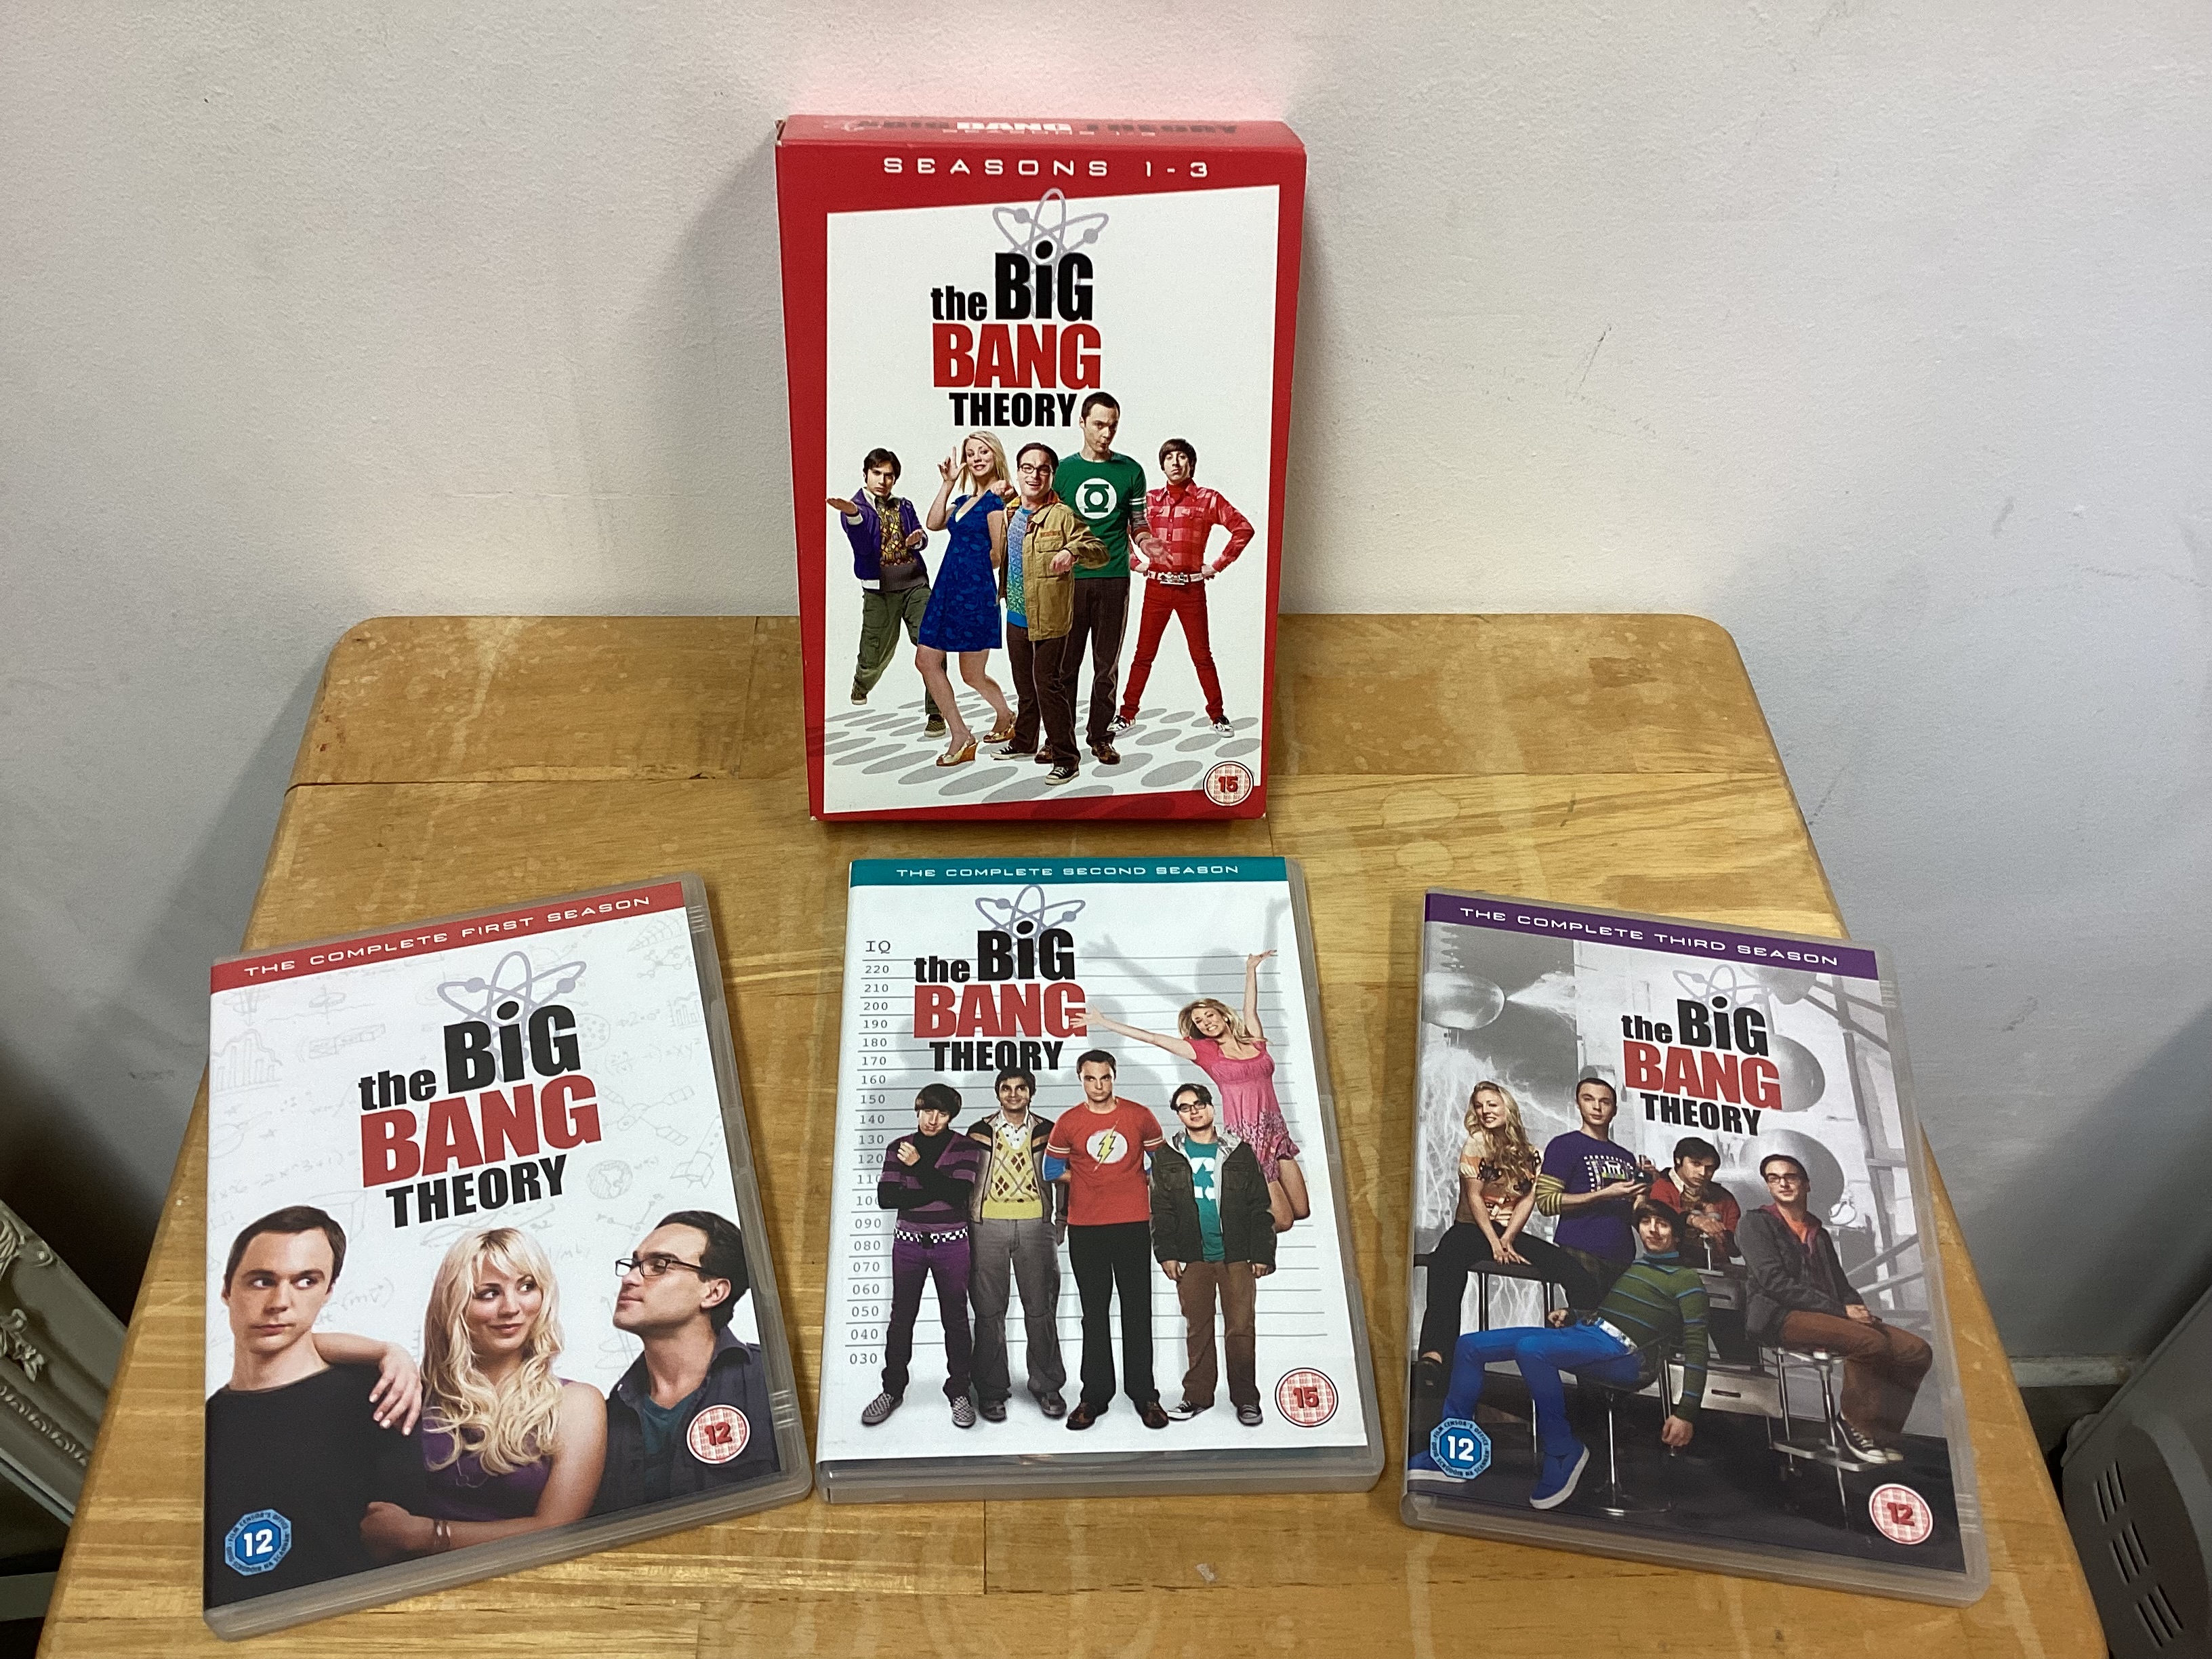 The Big Bang Theory Seasons 1 -3